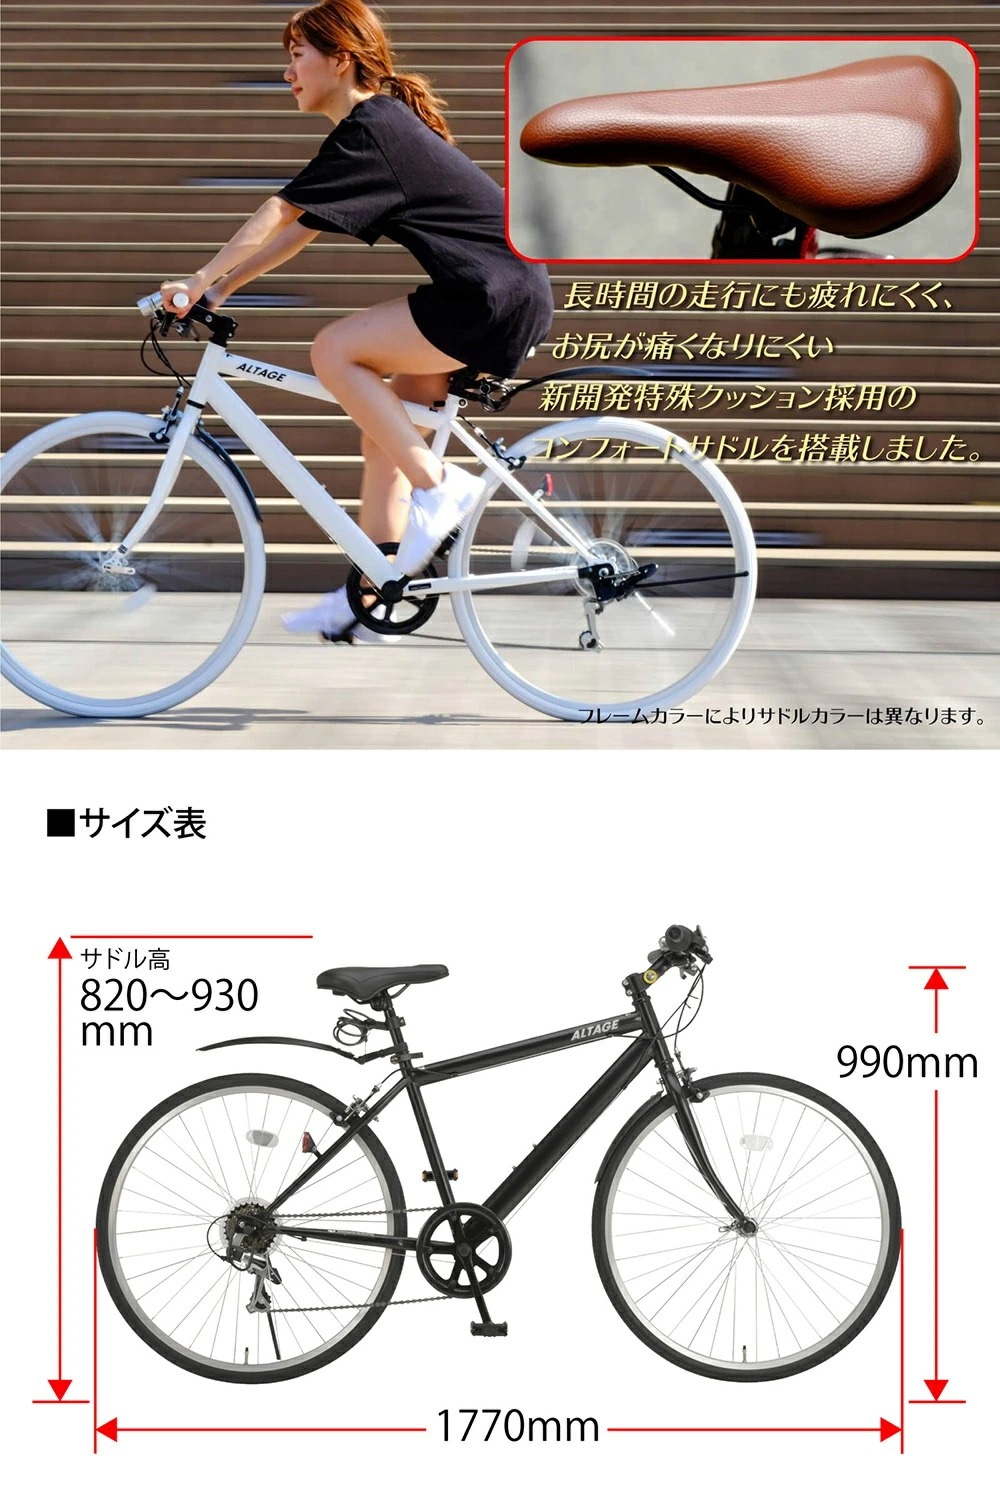 激安新品大特価 ALTAGE完成品 自転車 クロスバイク 26インチ シマノ6段変速 ACR-001 泥除け付き 軽量 おしゃれ  クーポン特価-ssl.daikyogo.or.jp